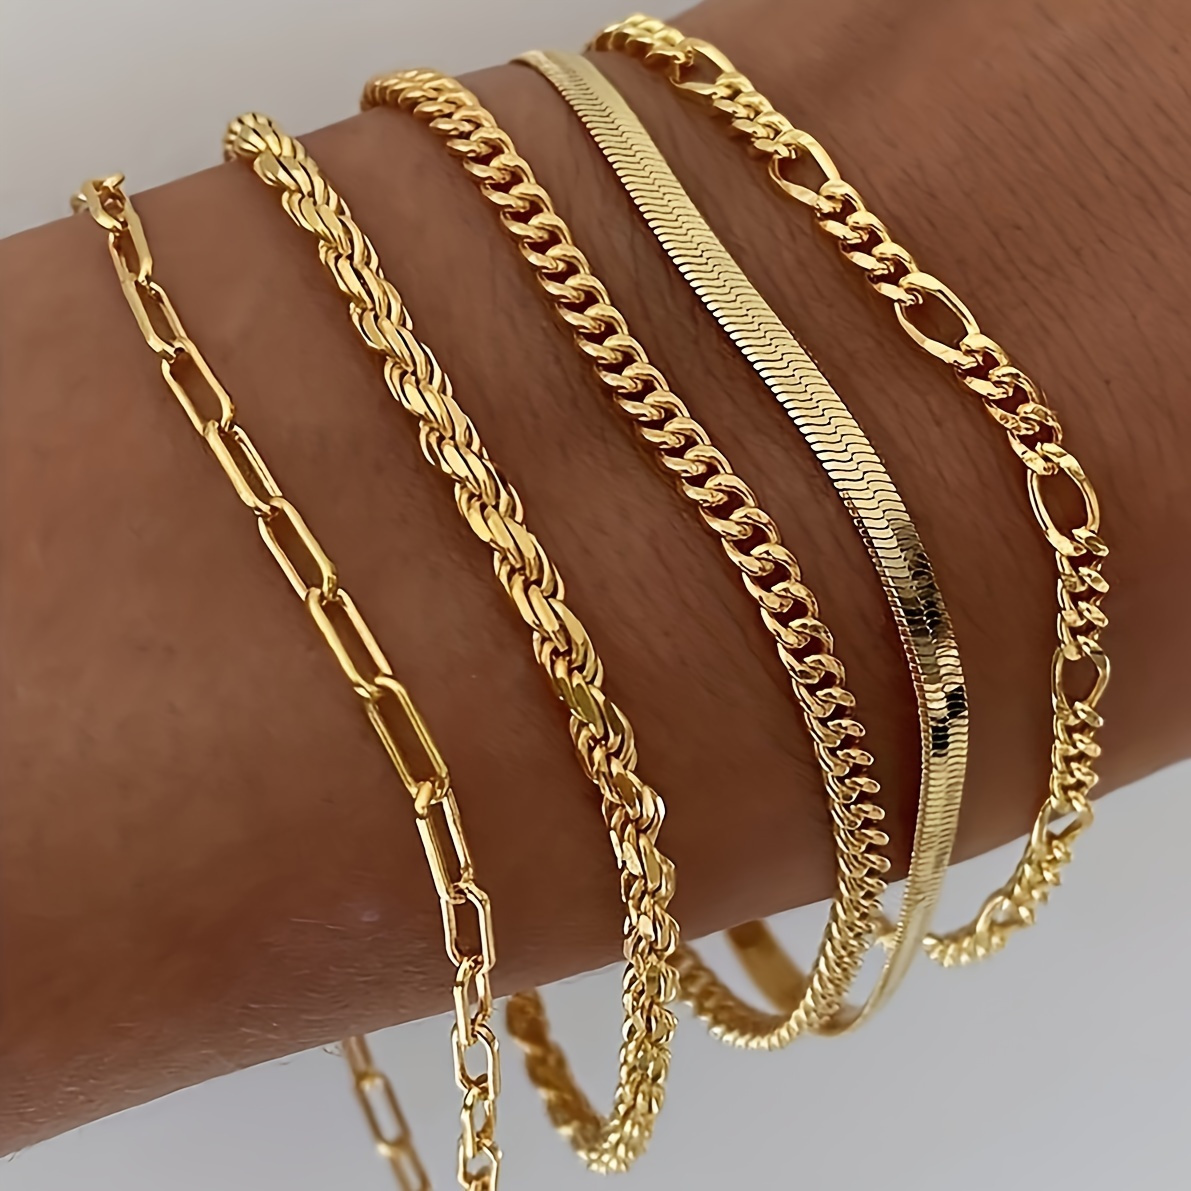 

5 Pcs Thin Alloy Chain Bracelet Set Elegant Simple Style Suitable For Women Stackable Hand Chain